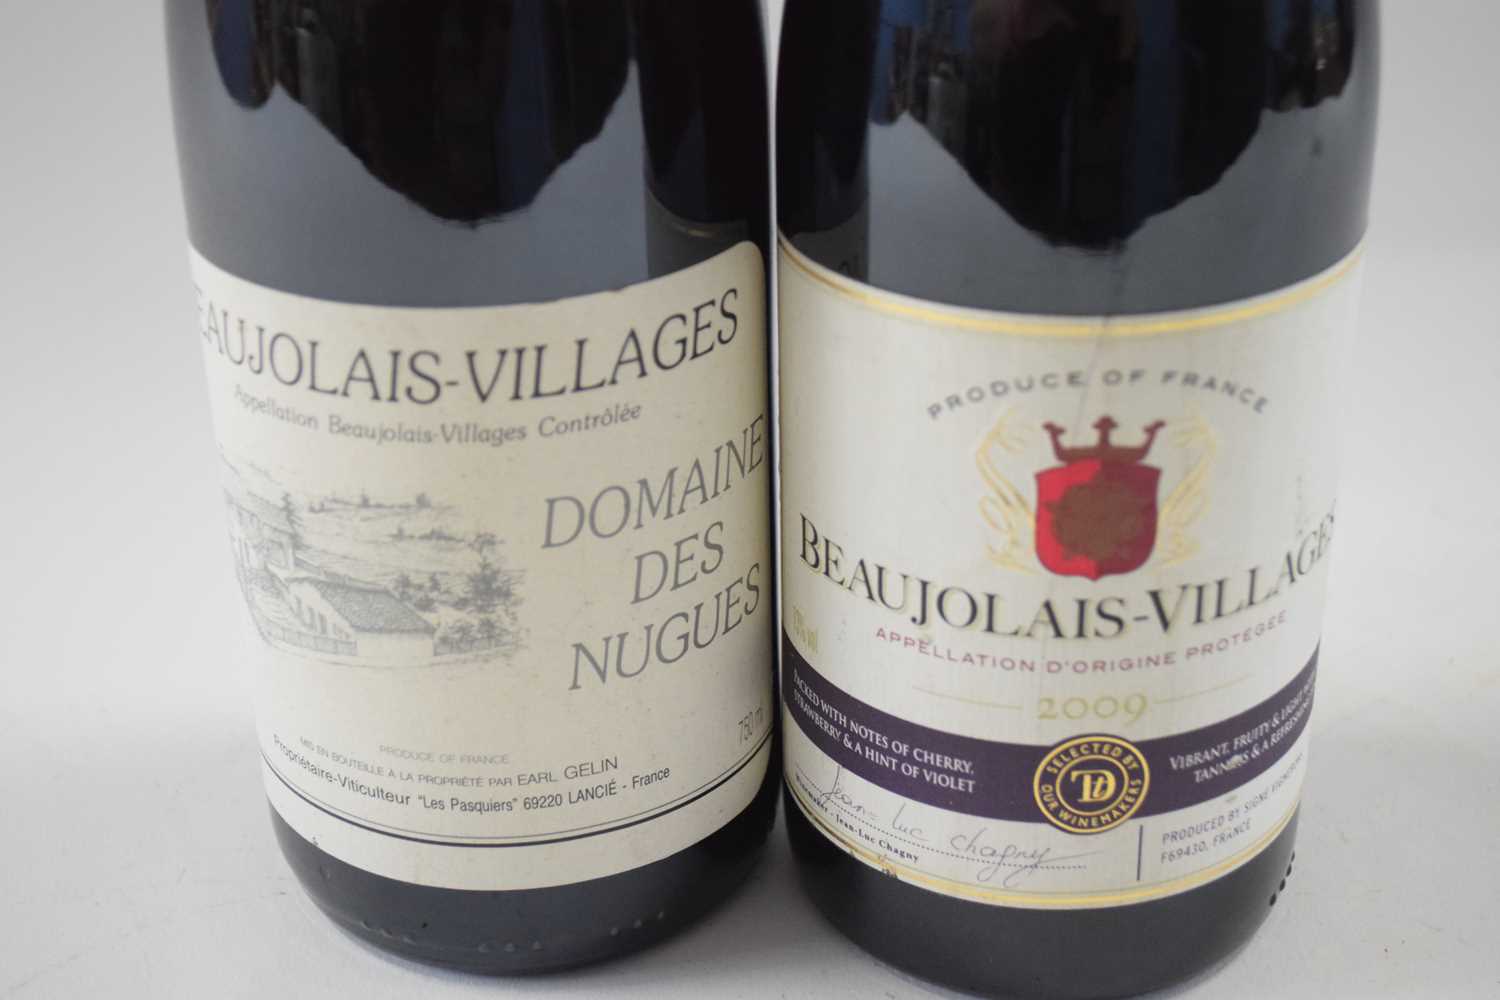 2009 Beaufolais Villages, 1 bottle; 2008 Beaujolais Villages Dom des Nugues, 1 bottle (2) - Image 2 of 3